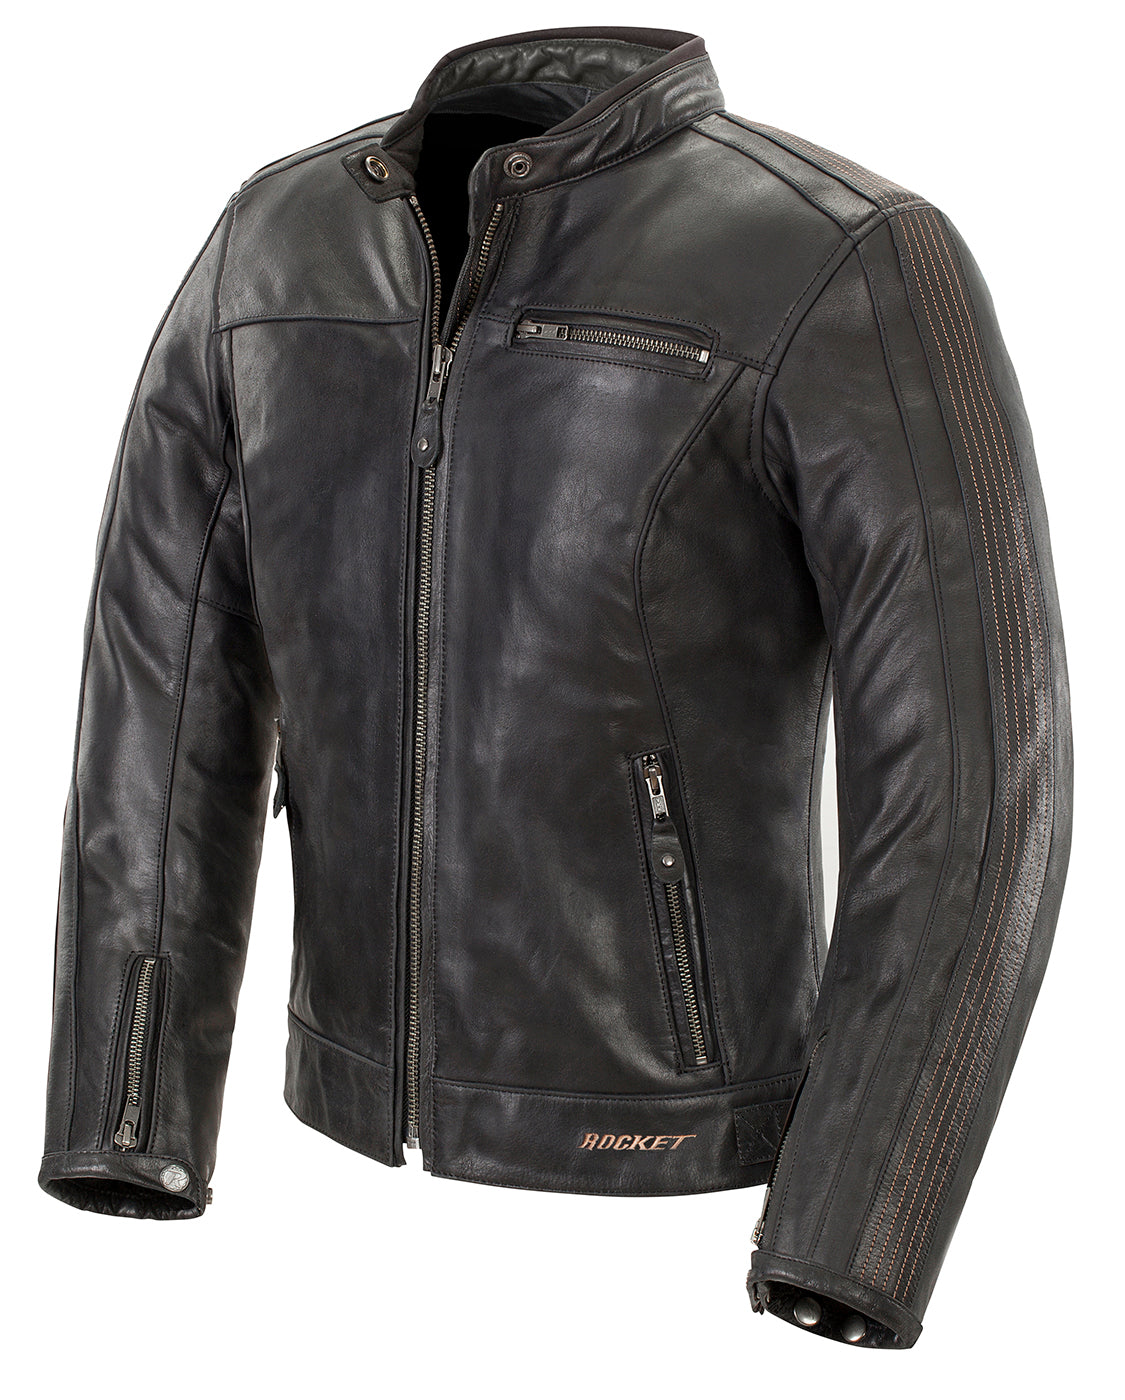 Joe Rocket Womens Vintage Leather Jacket - Black